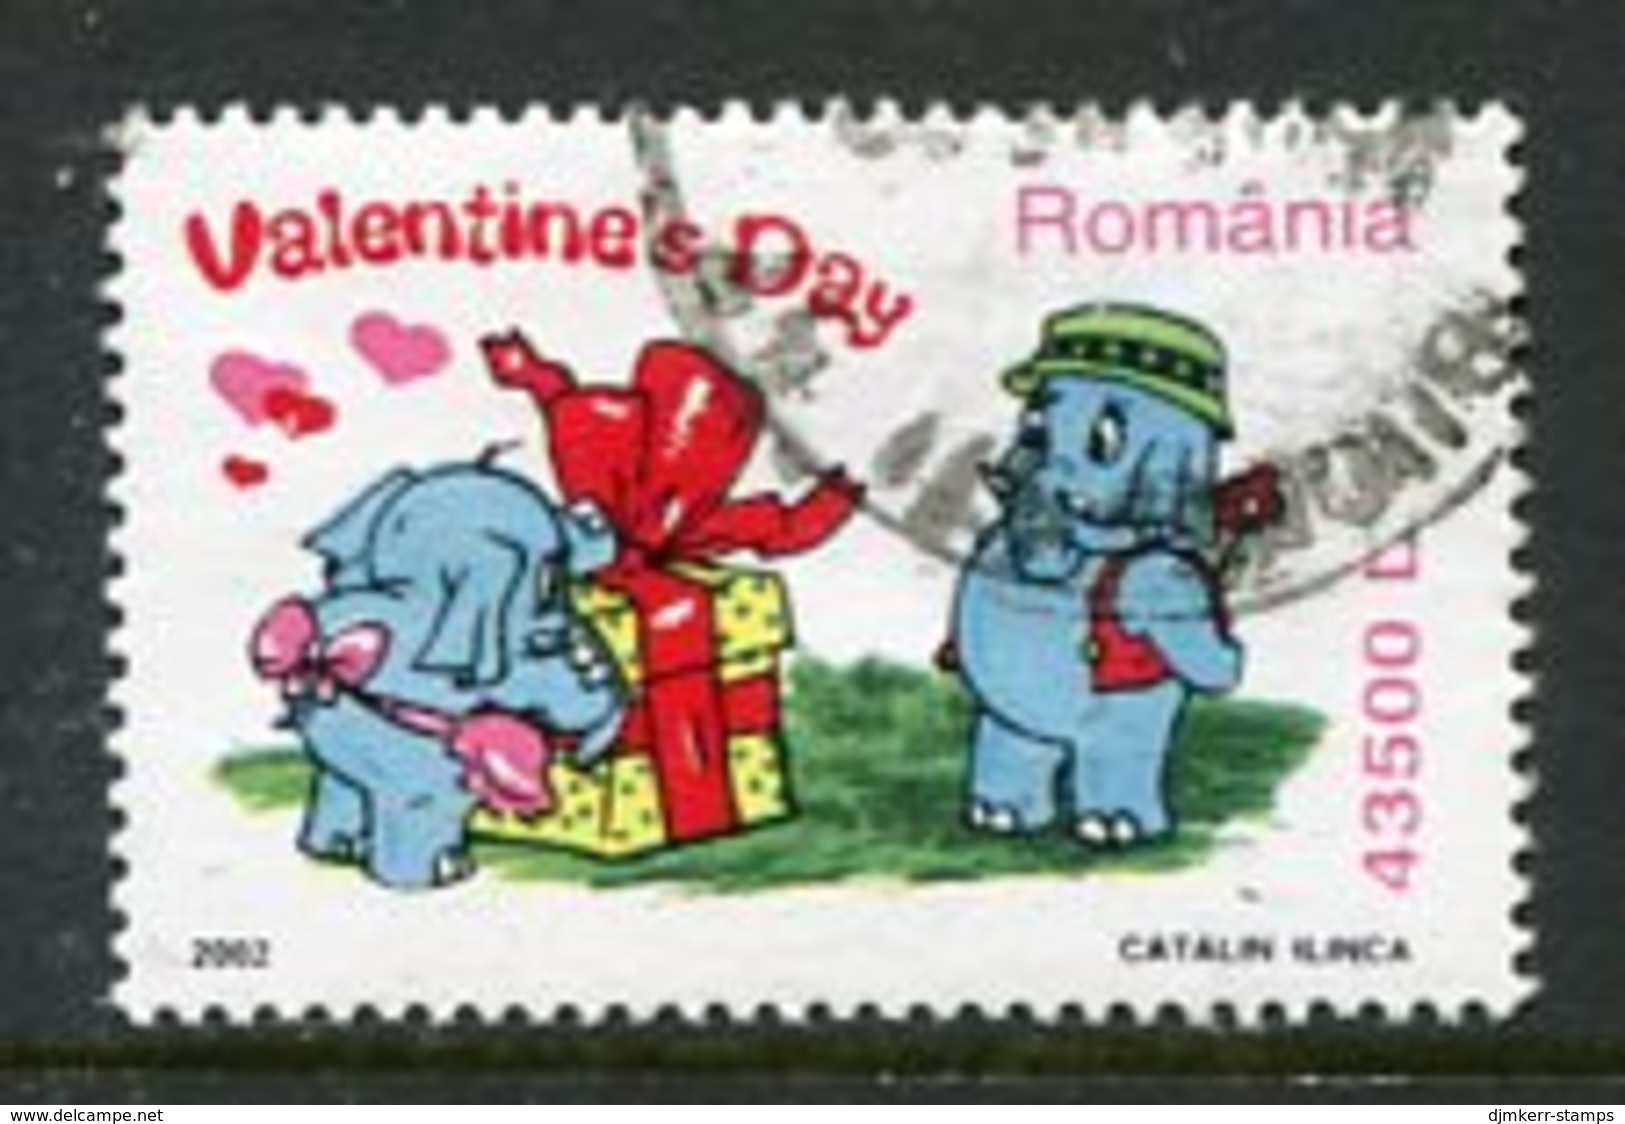 ROMANIA 2002 Valentines Day 43500 L. Used.  Michel 5640 - Usado